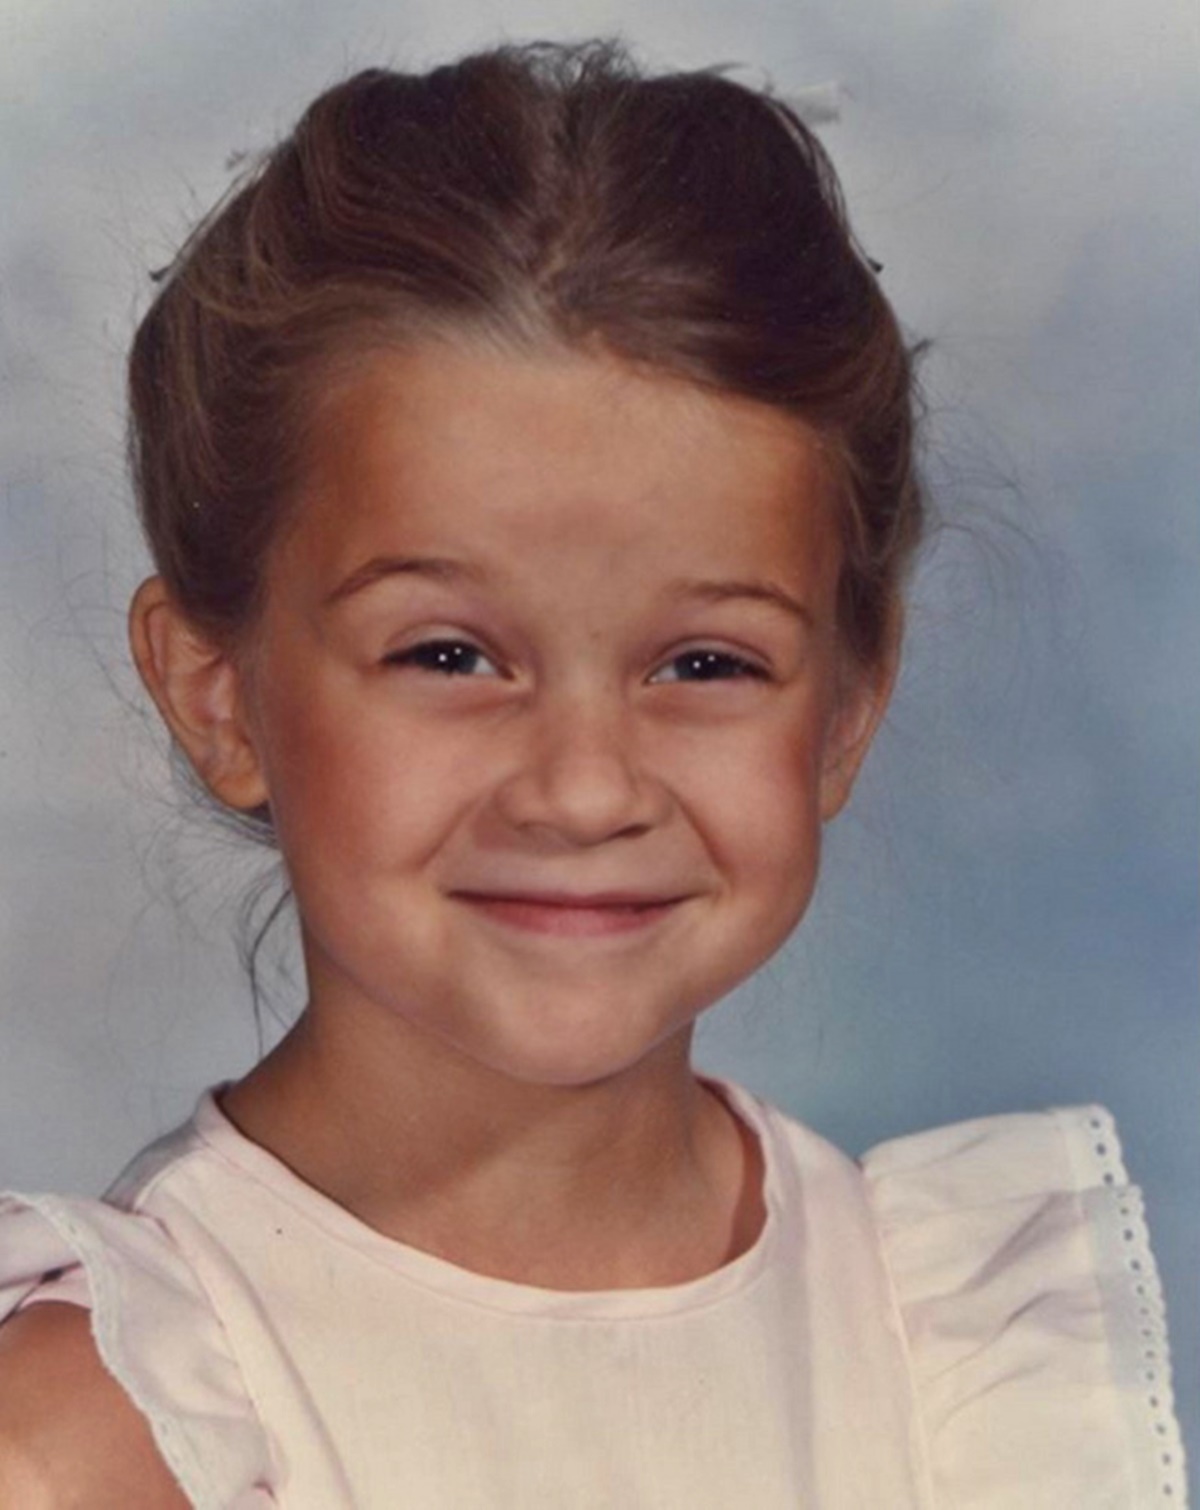 Reese Witherspoon gyerekkori fotójától elolvadunk - Így nézett ki a színésznő óvodás korában